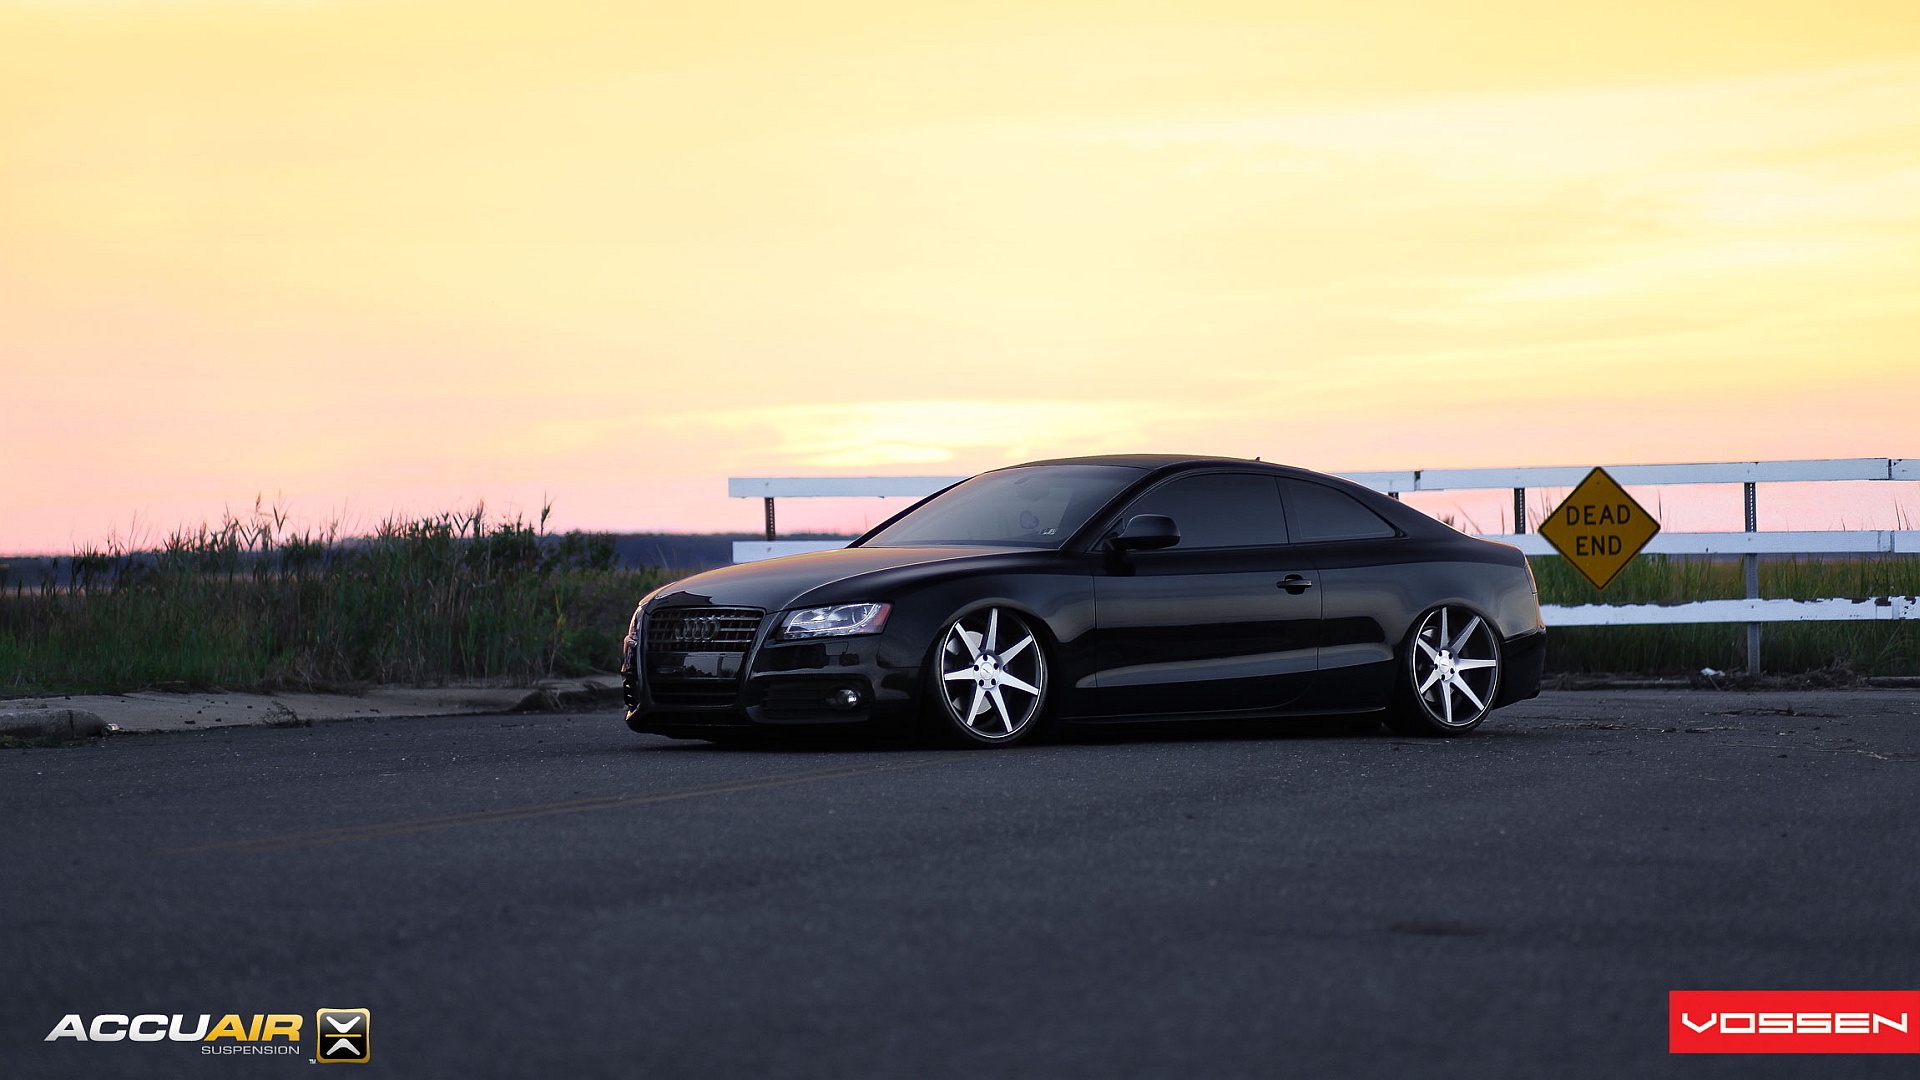 Audi S5 Wallpaper Image